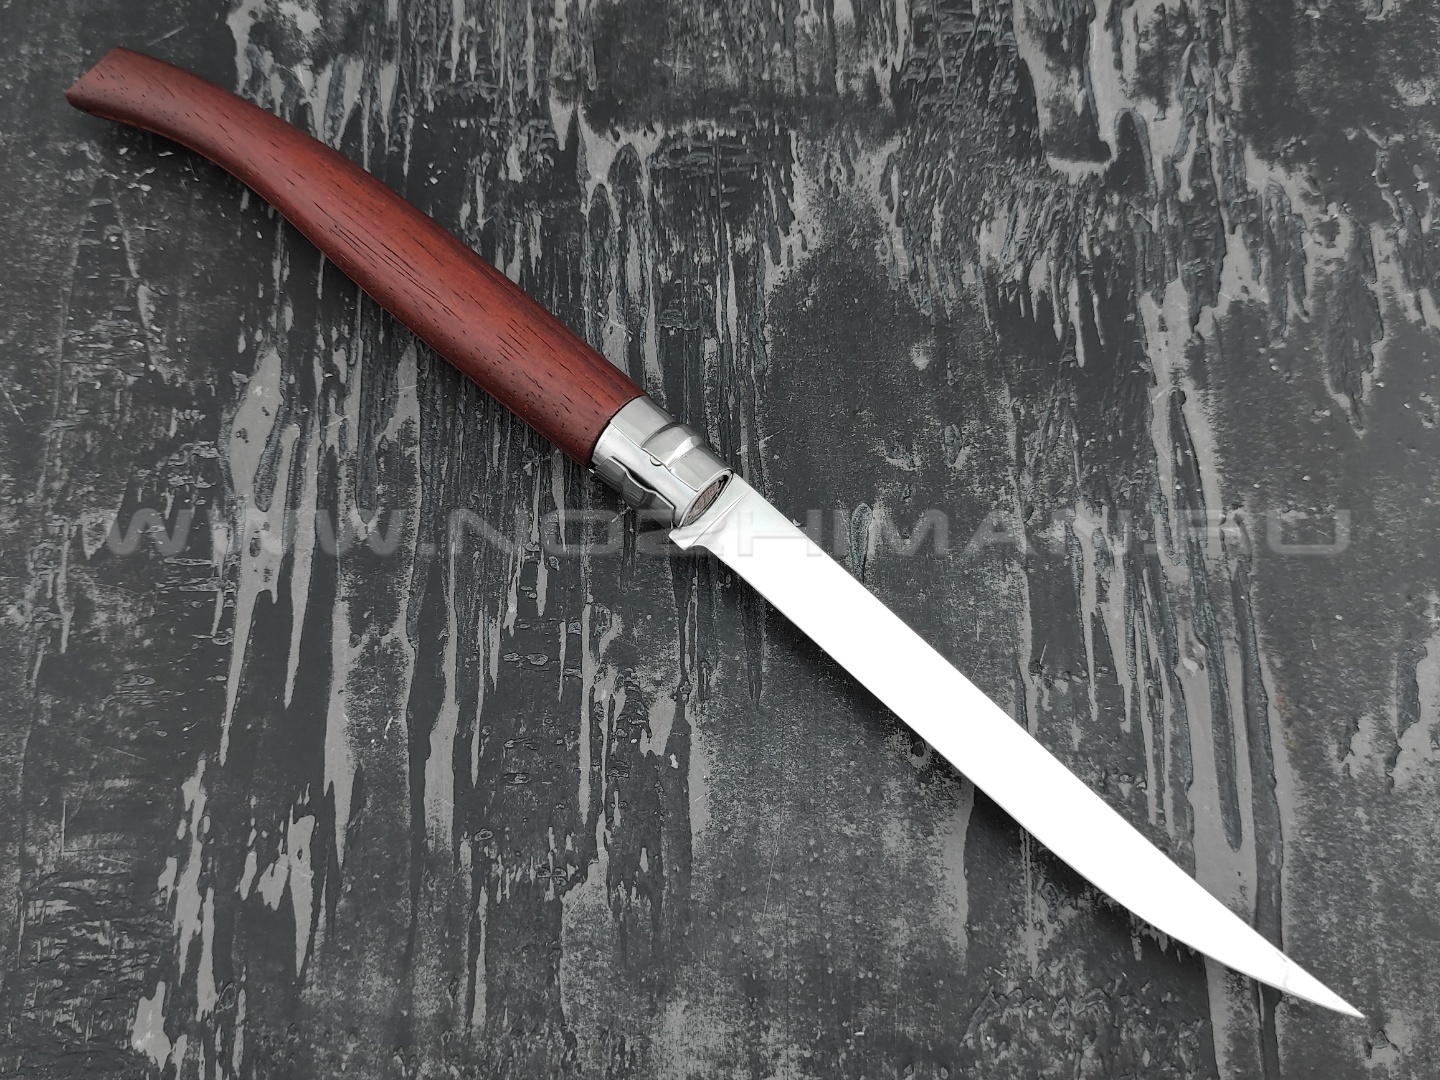 Нож Opinel складной филейный №15 243150 сталь Sandvik 12C27, рукоять бубинга